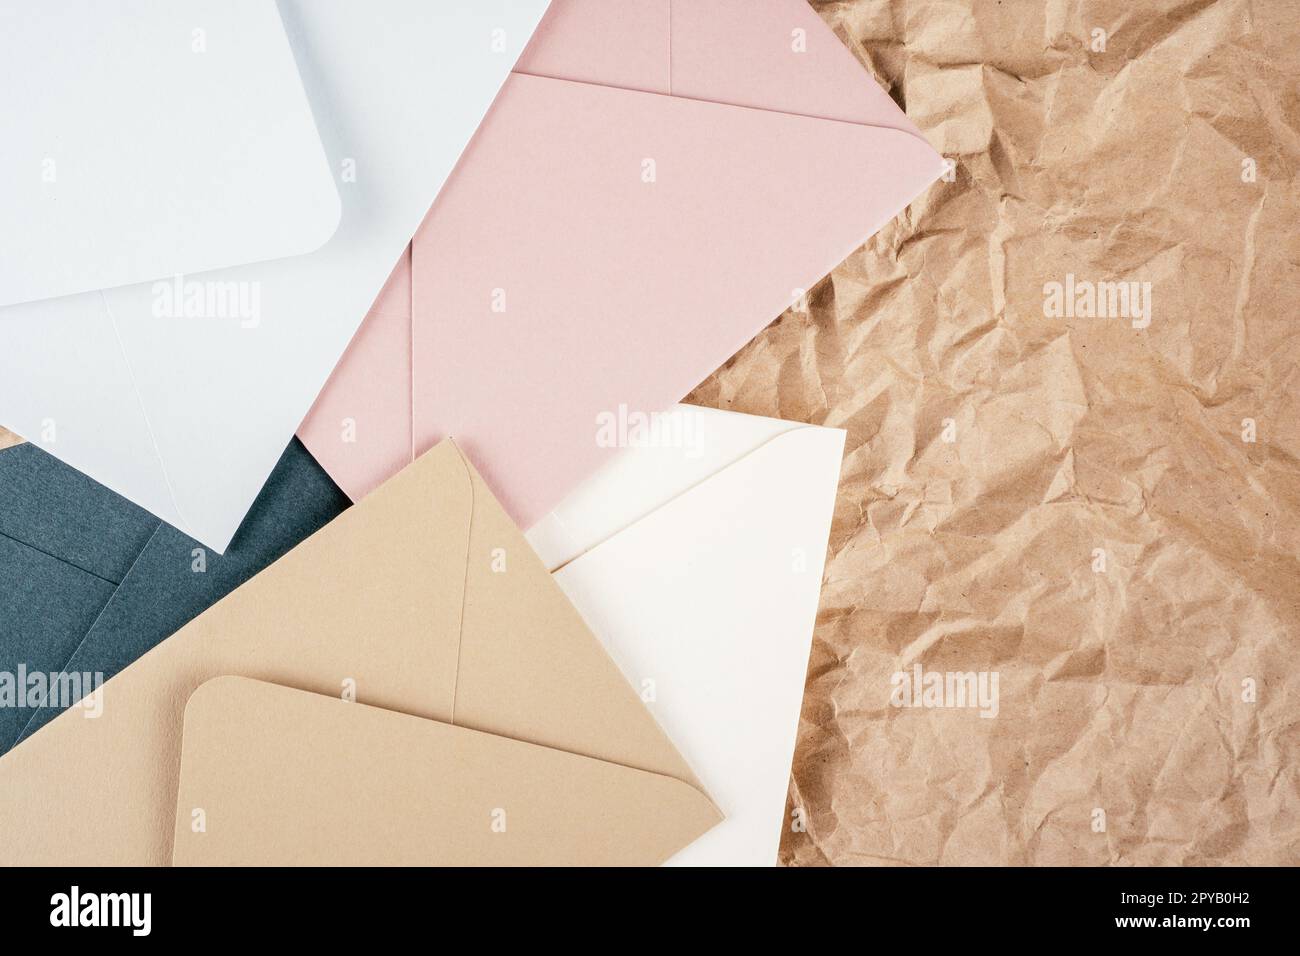 Image de fond de papier kraft texturé froissé rugueux avec des enveloppes en carton multicolore. Vue de dessus. Espace de copie Banque D'Images